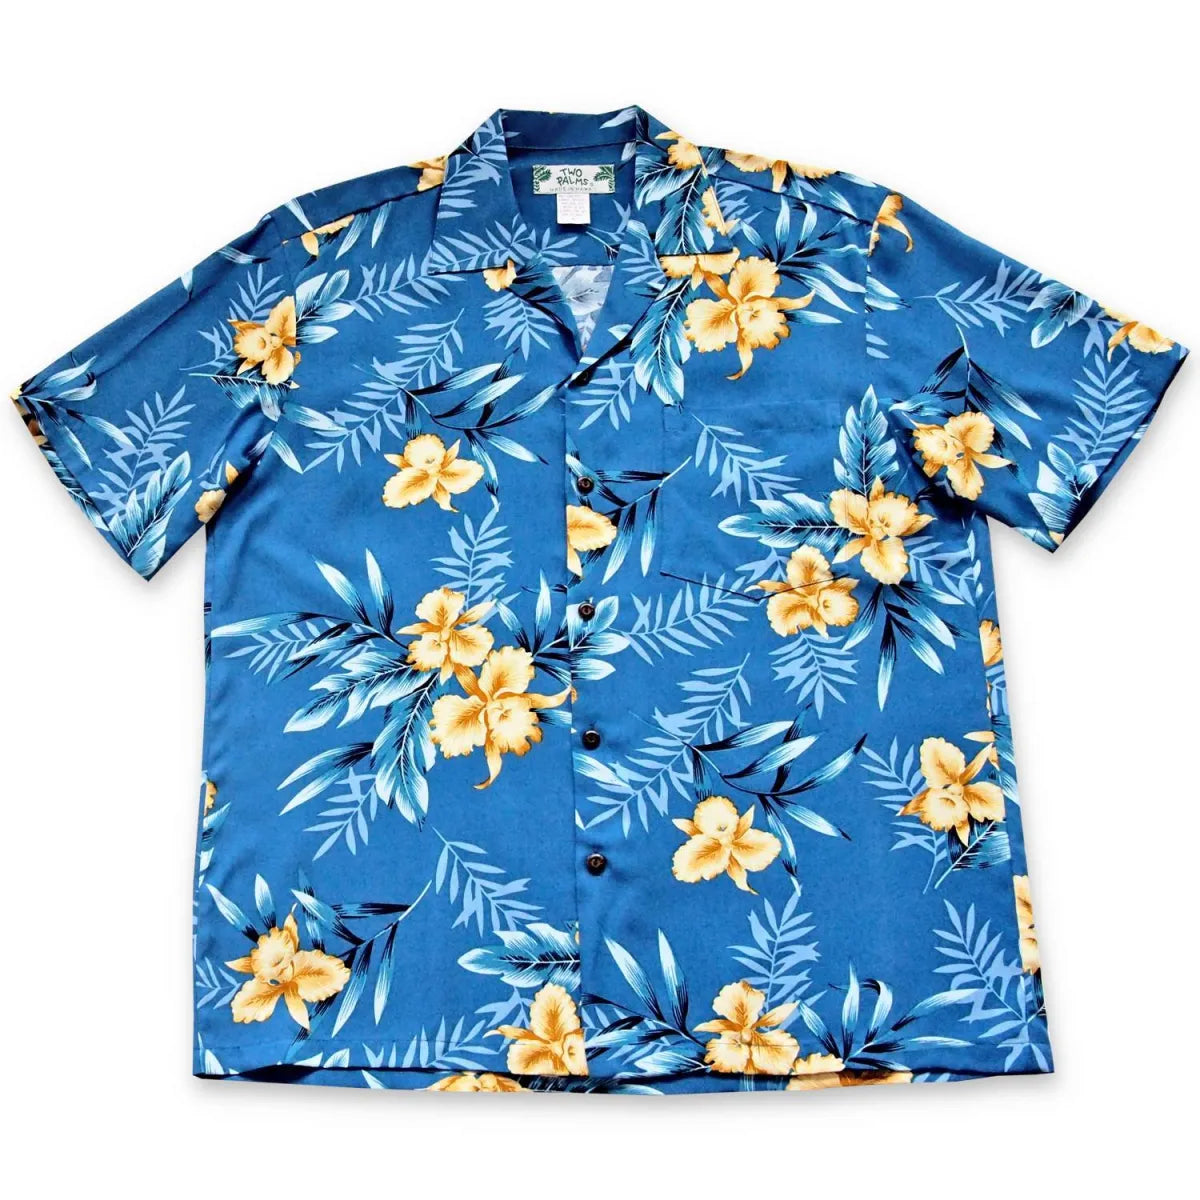 Midnight blue hawaiian rayon shirt